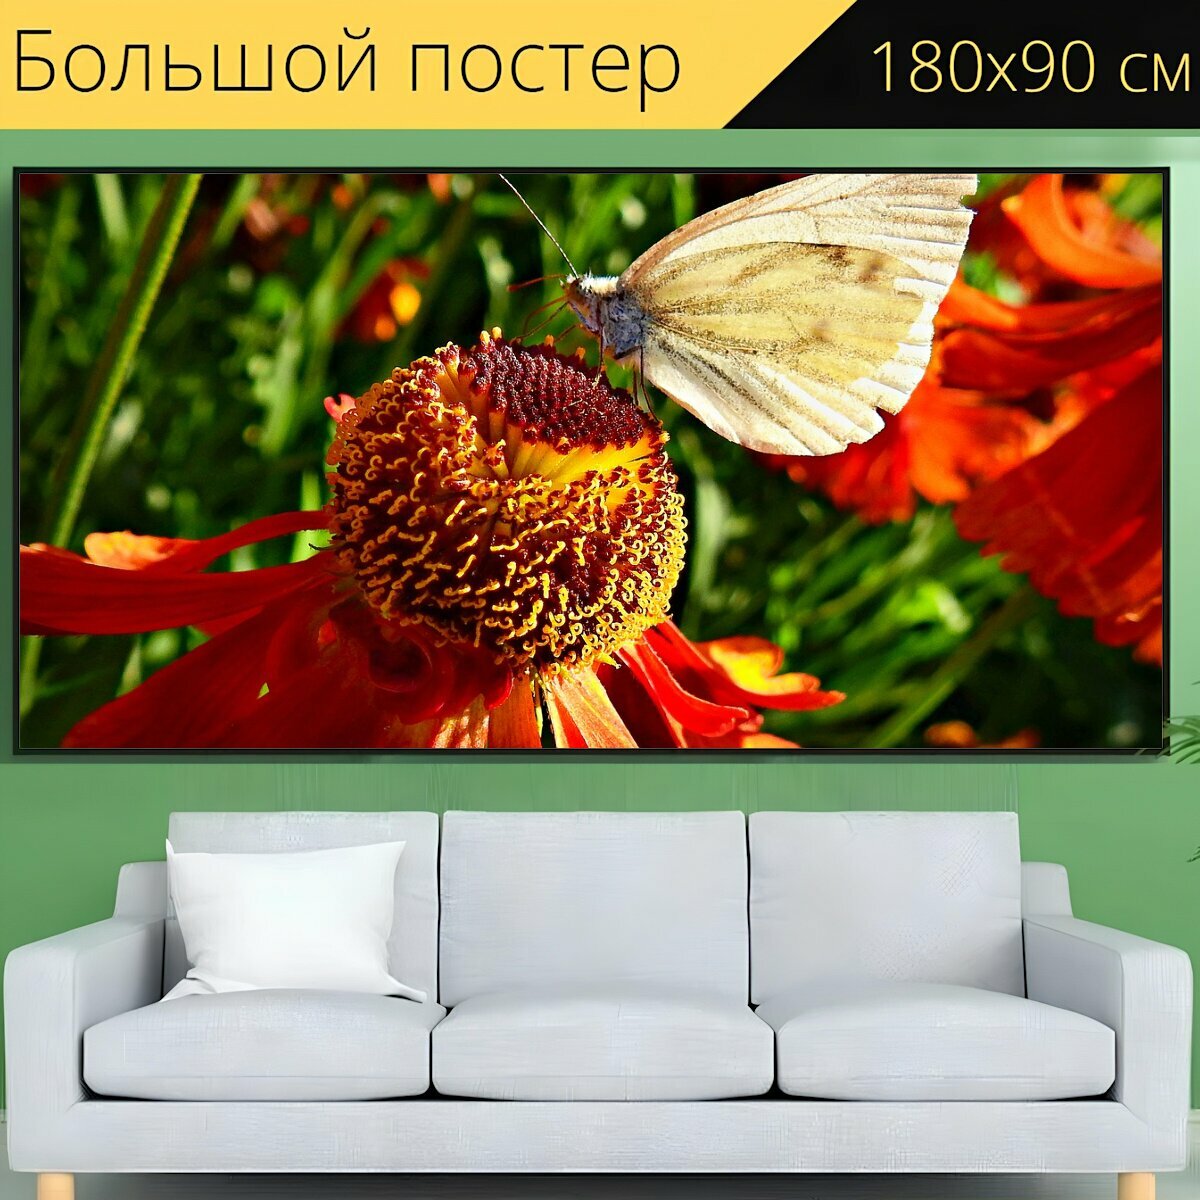 Большой постер "Бабочка, бабочка на цветке, кормление бабочки" 180 x 90 см. для интерьера